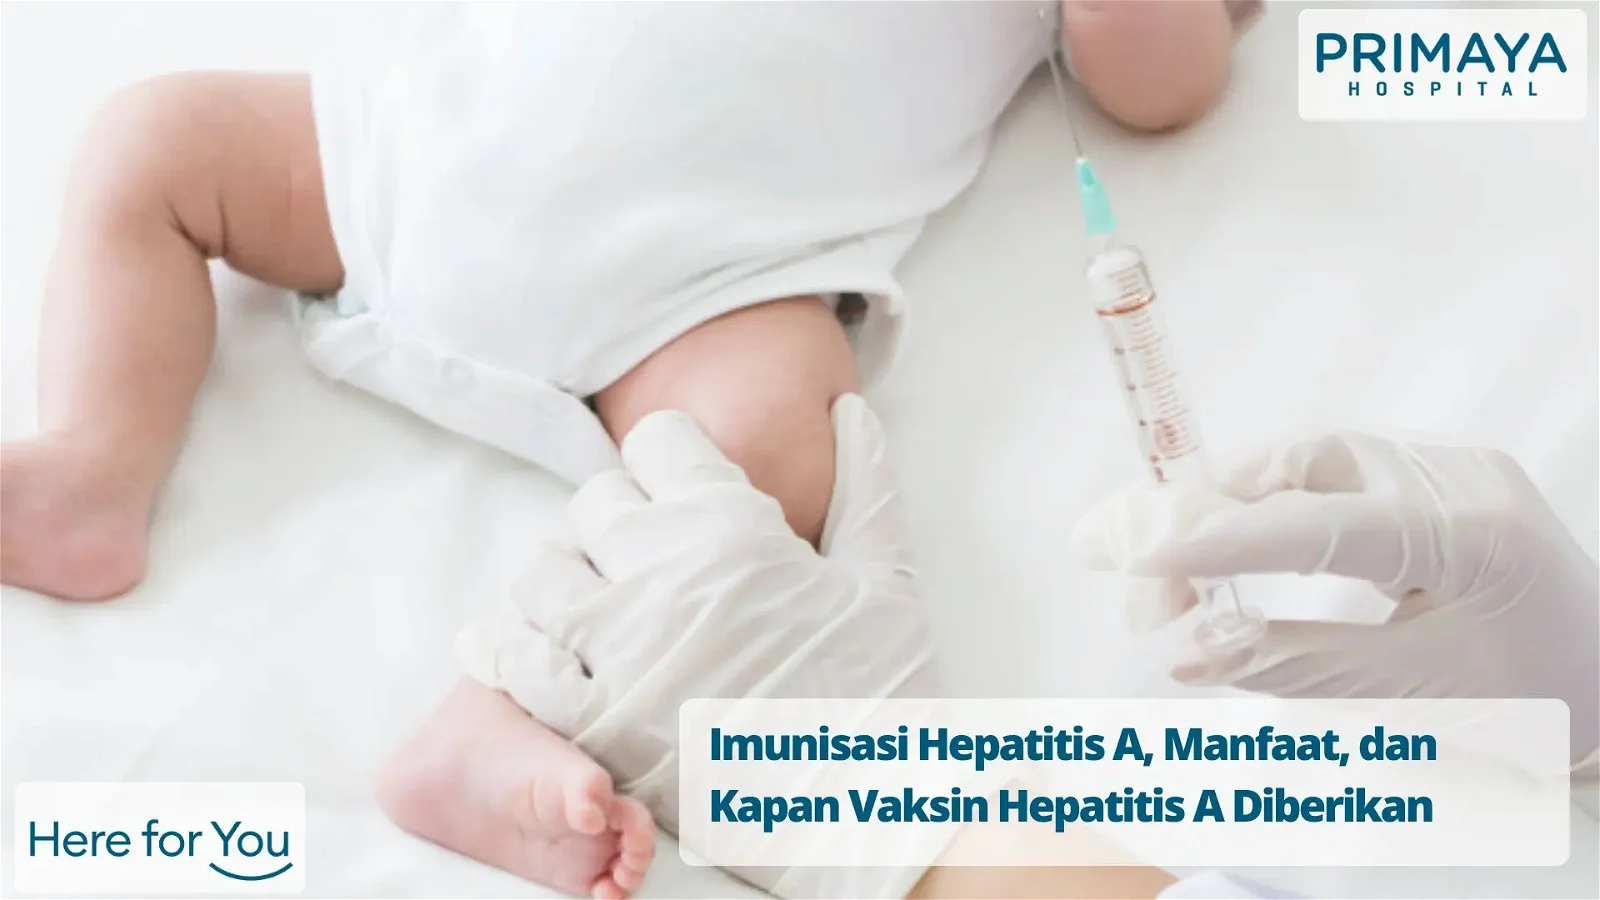 Imunisasi Hepatitis A, Manfaat, dan Kapan Vaksin Hepatitis A Diberikan